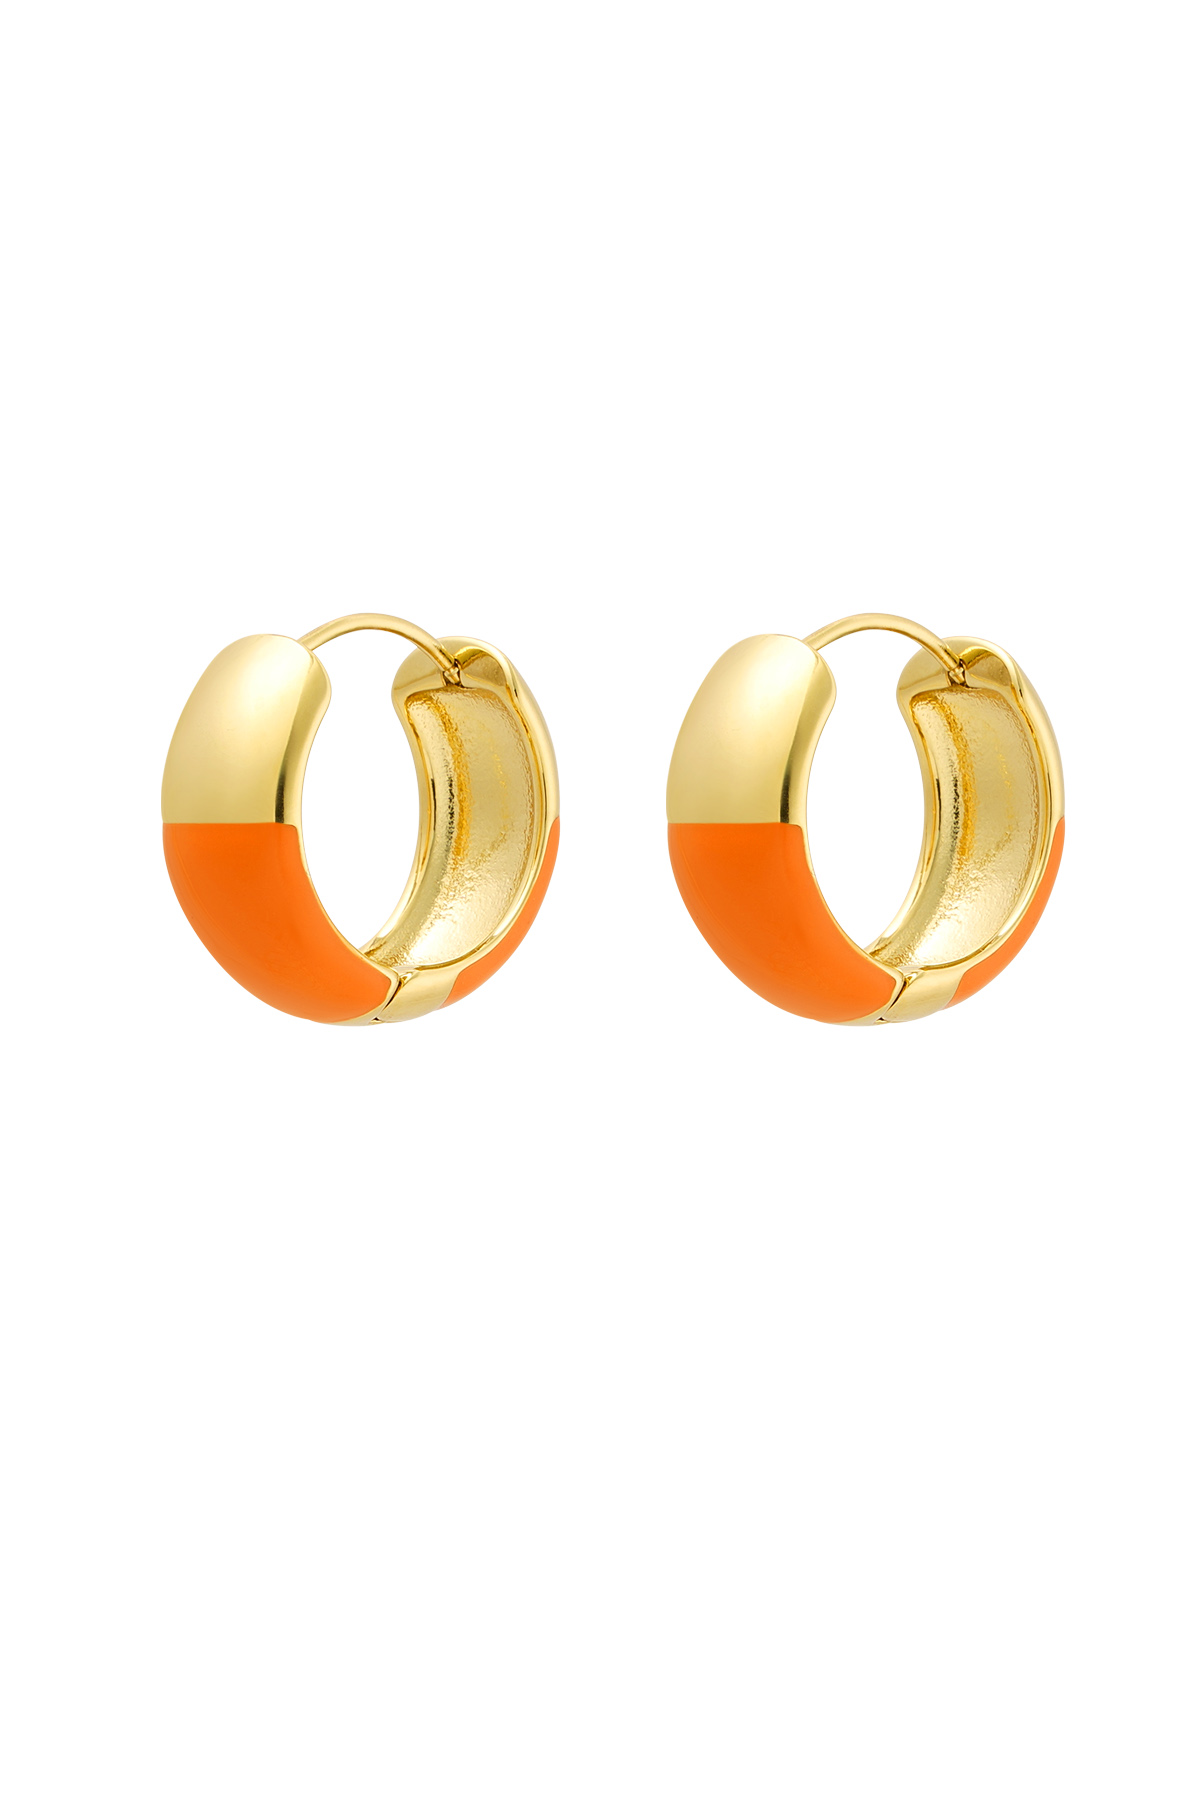 Halbfarbige Ohrringe aus Edelstahl in Orange und Gold